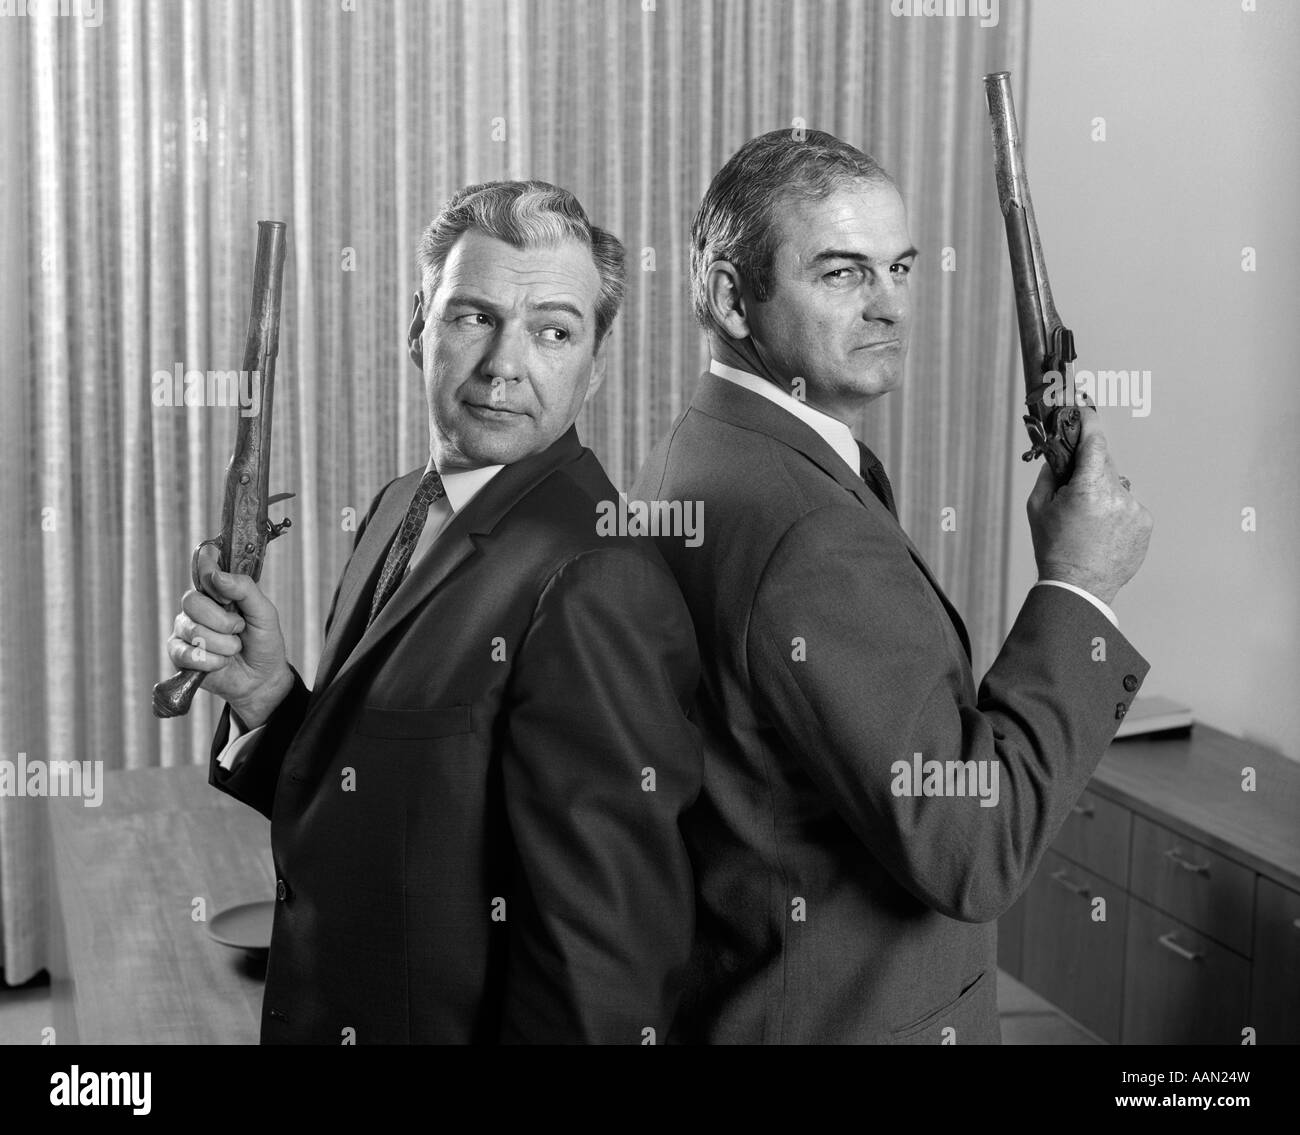 1960 2 hombres de edad media espalda sosteniendo duelo pistolas ametralladoras Foto de stock